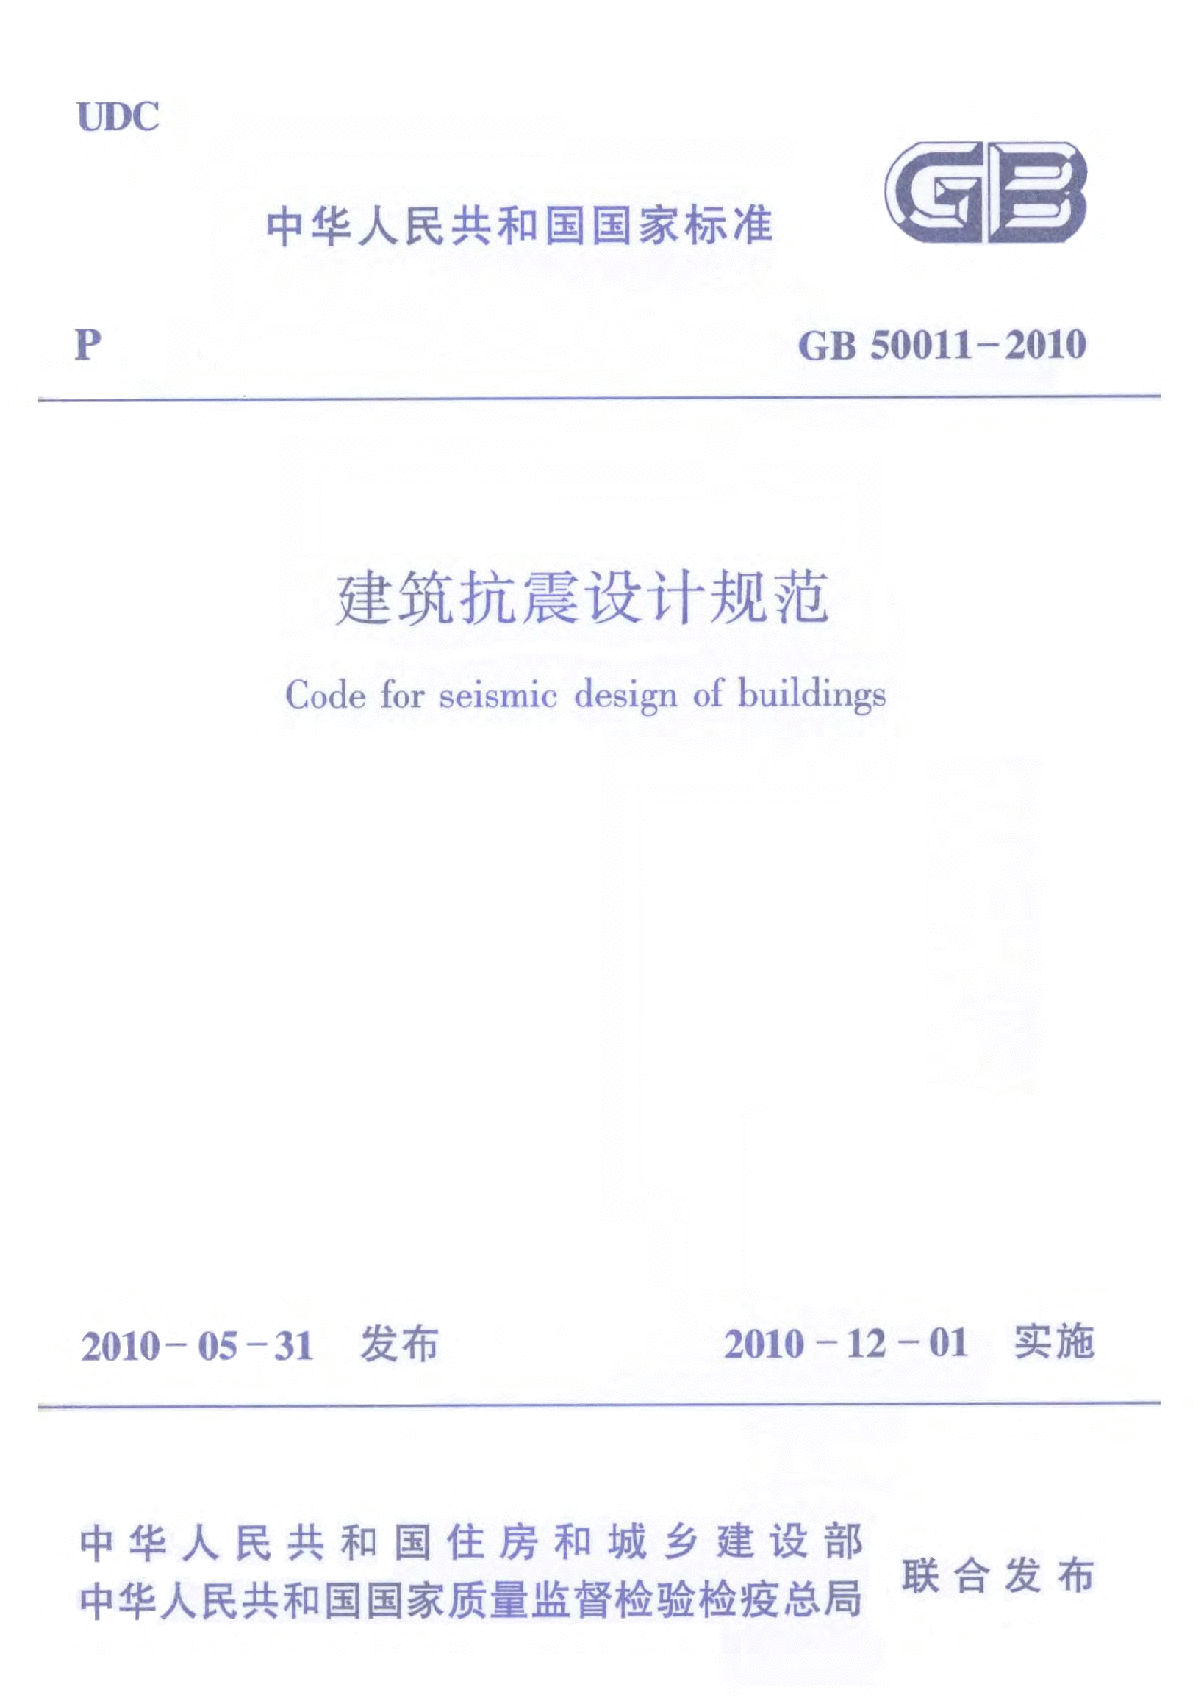 建筑抗震设计规范(GB50011-2010)含详细书签、强条、局部修订及勘误